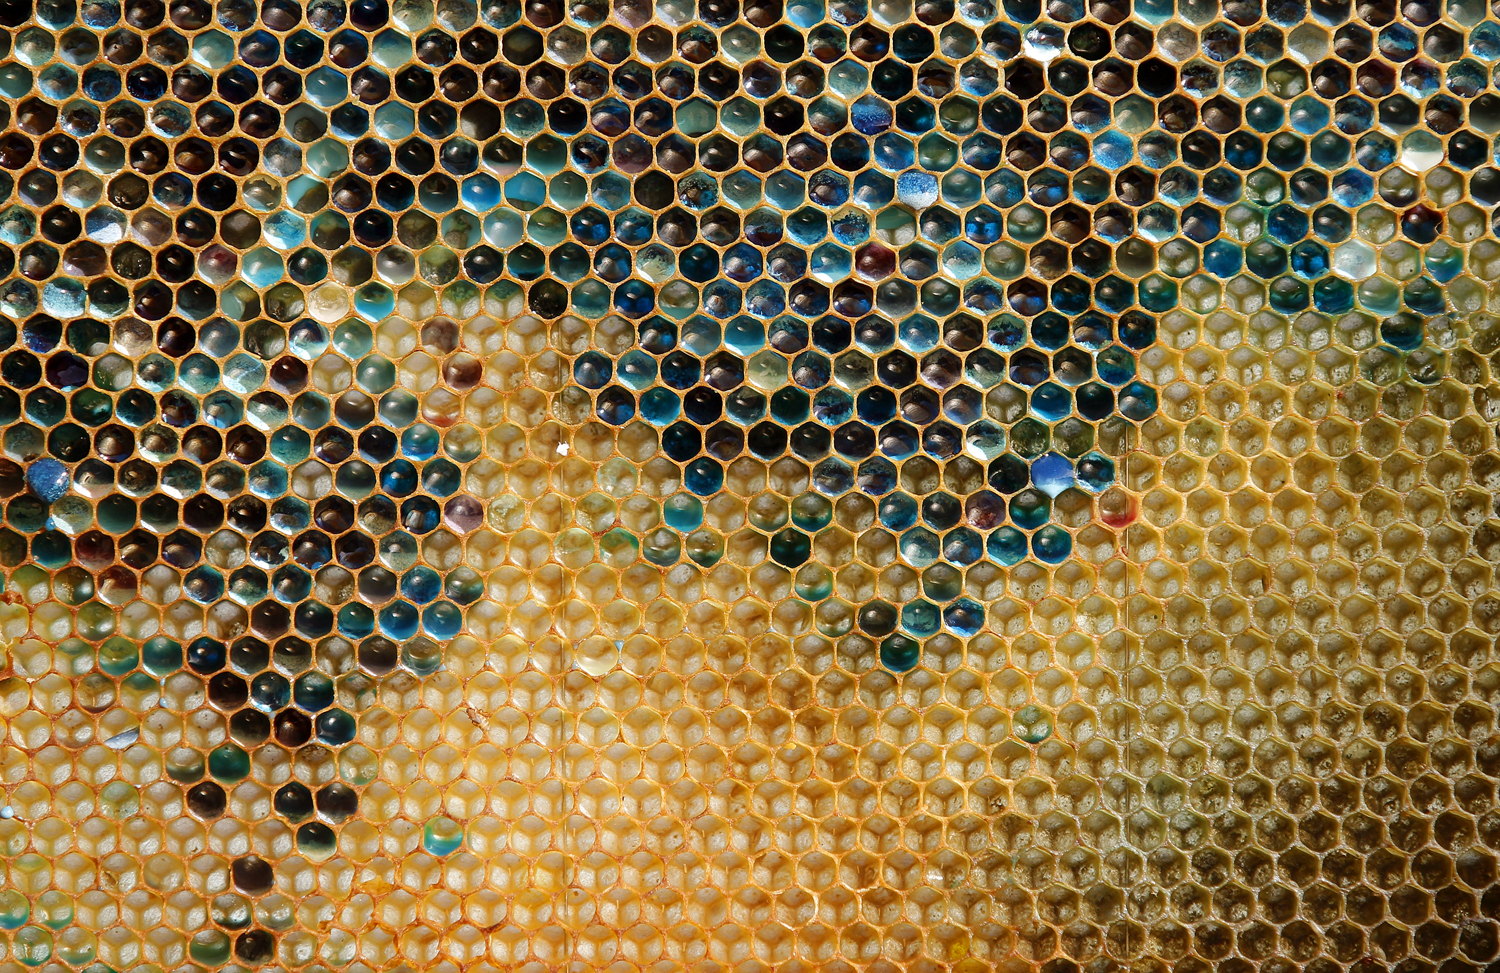 Valószínűleg környezeti szennyeződéstől elszíneződött méz egy franciaországi telepen